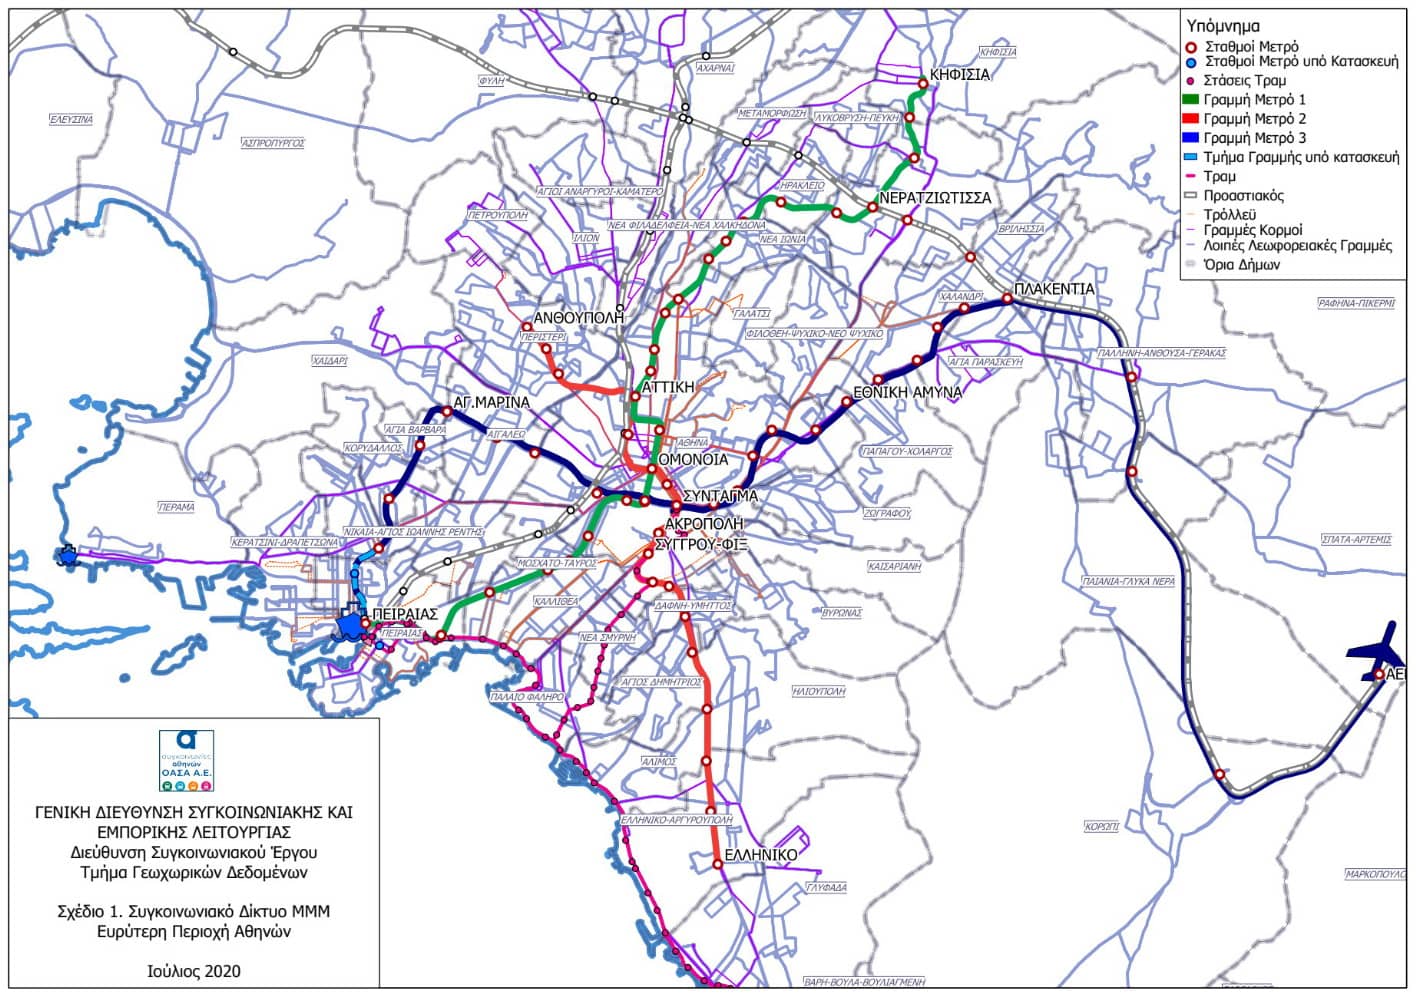 Χάρτης με το δίκτυο εξυπηρέτησης με τα ΜΜΜ στην Αθήνα